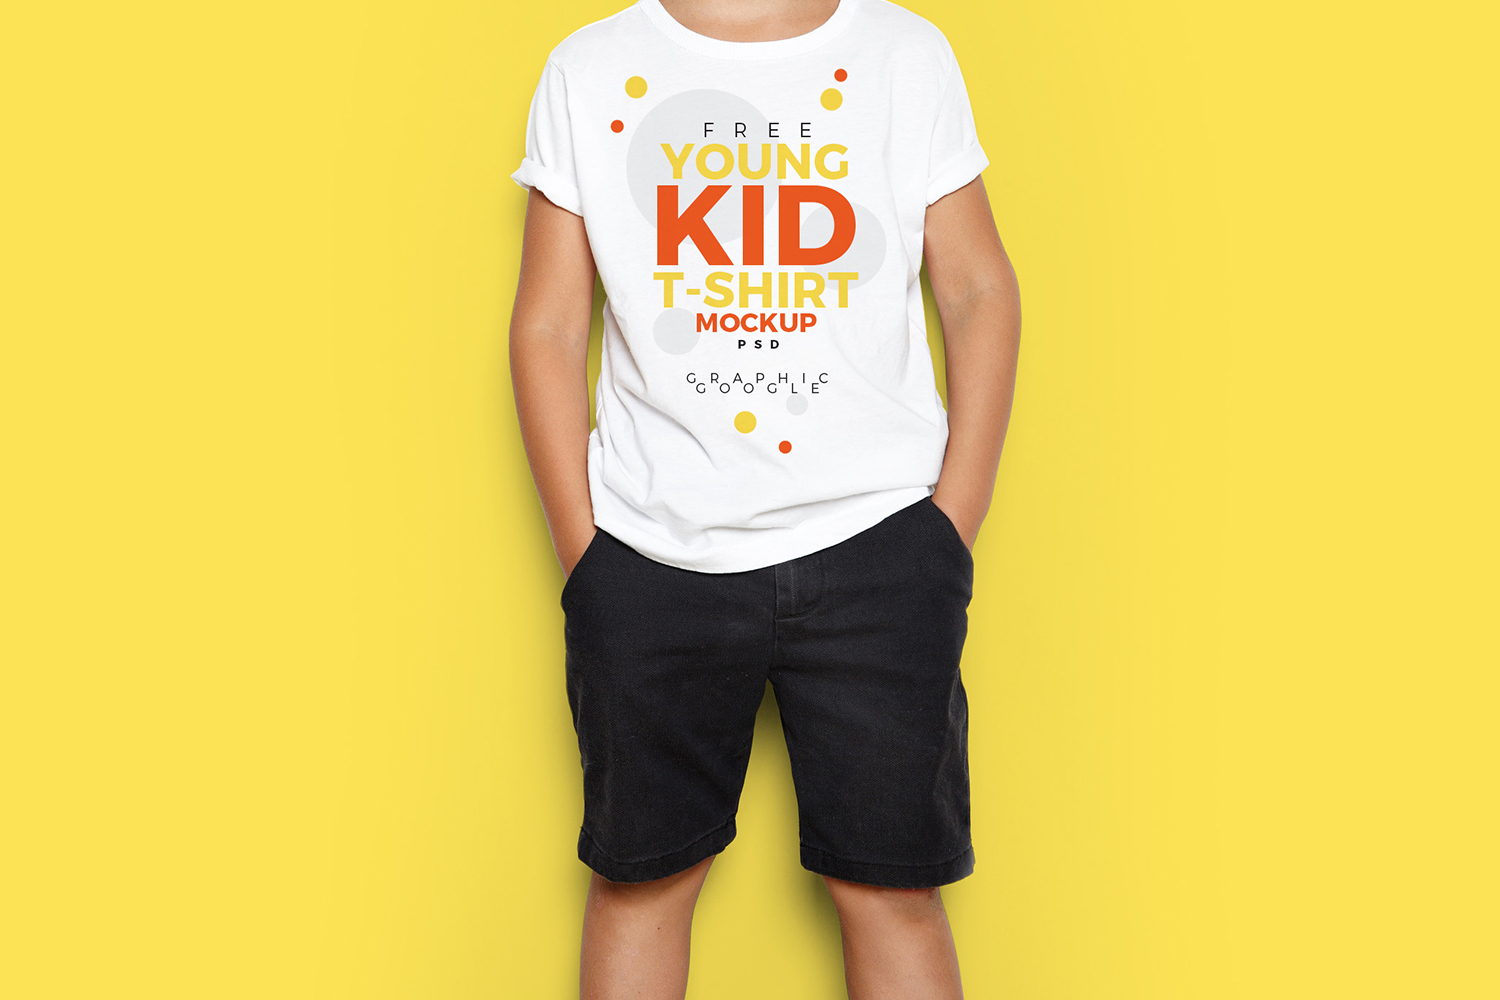 Young Kid T-Shirt Mockup Free Download 